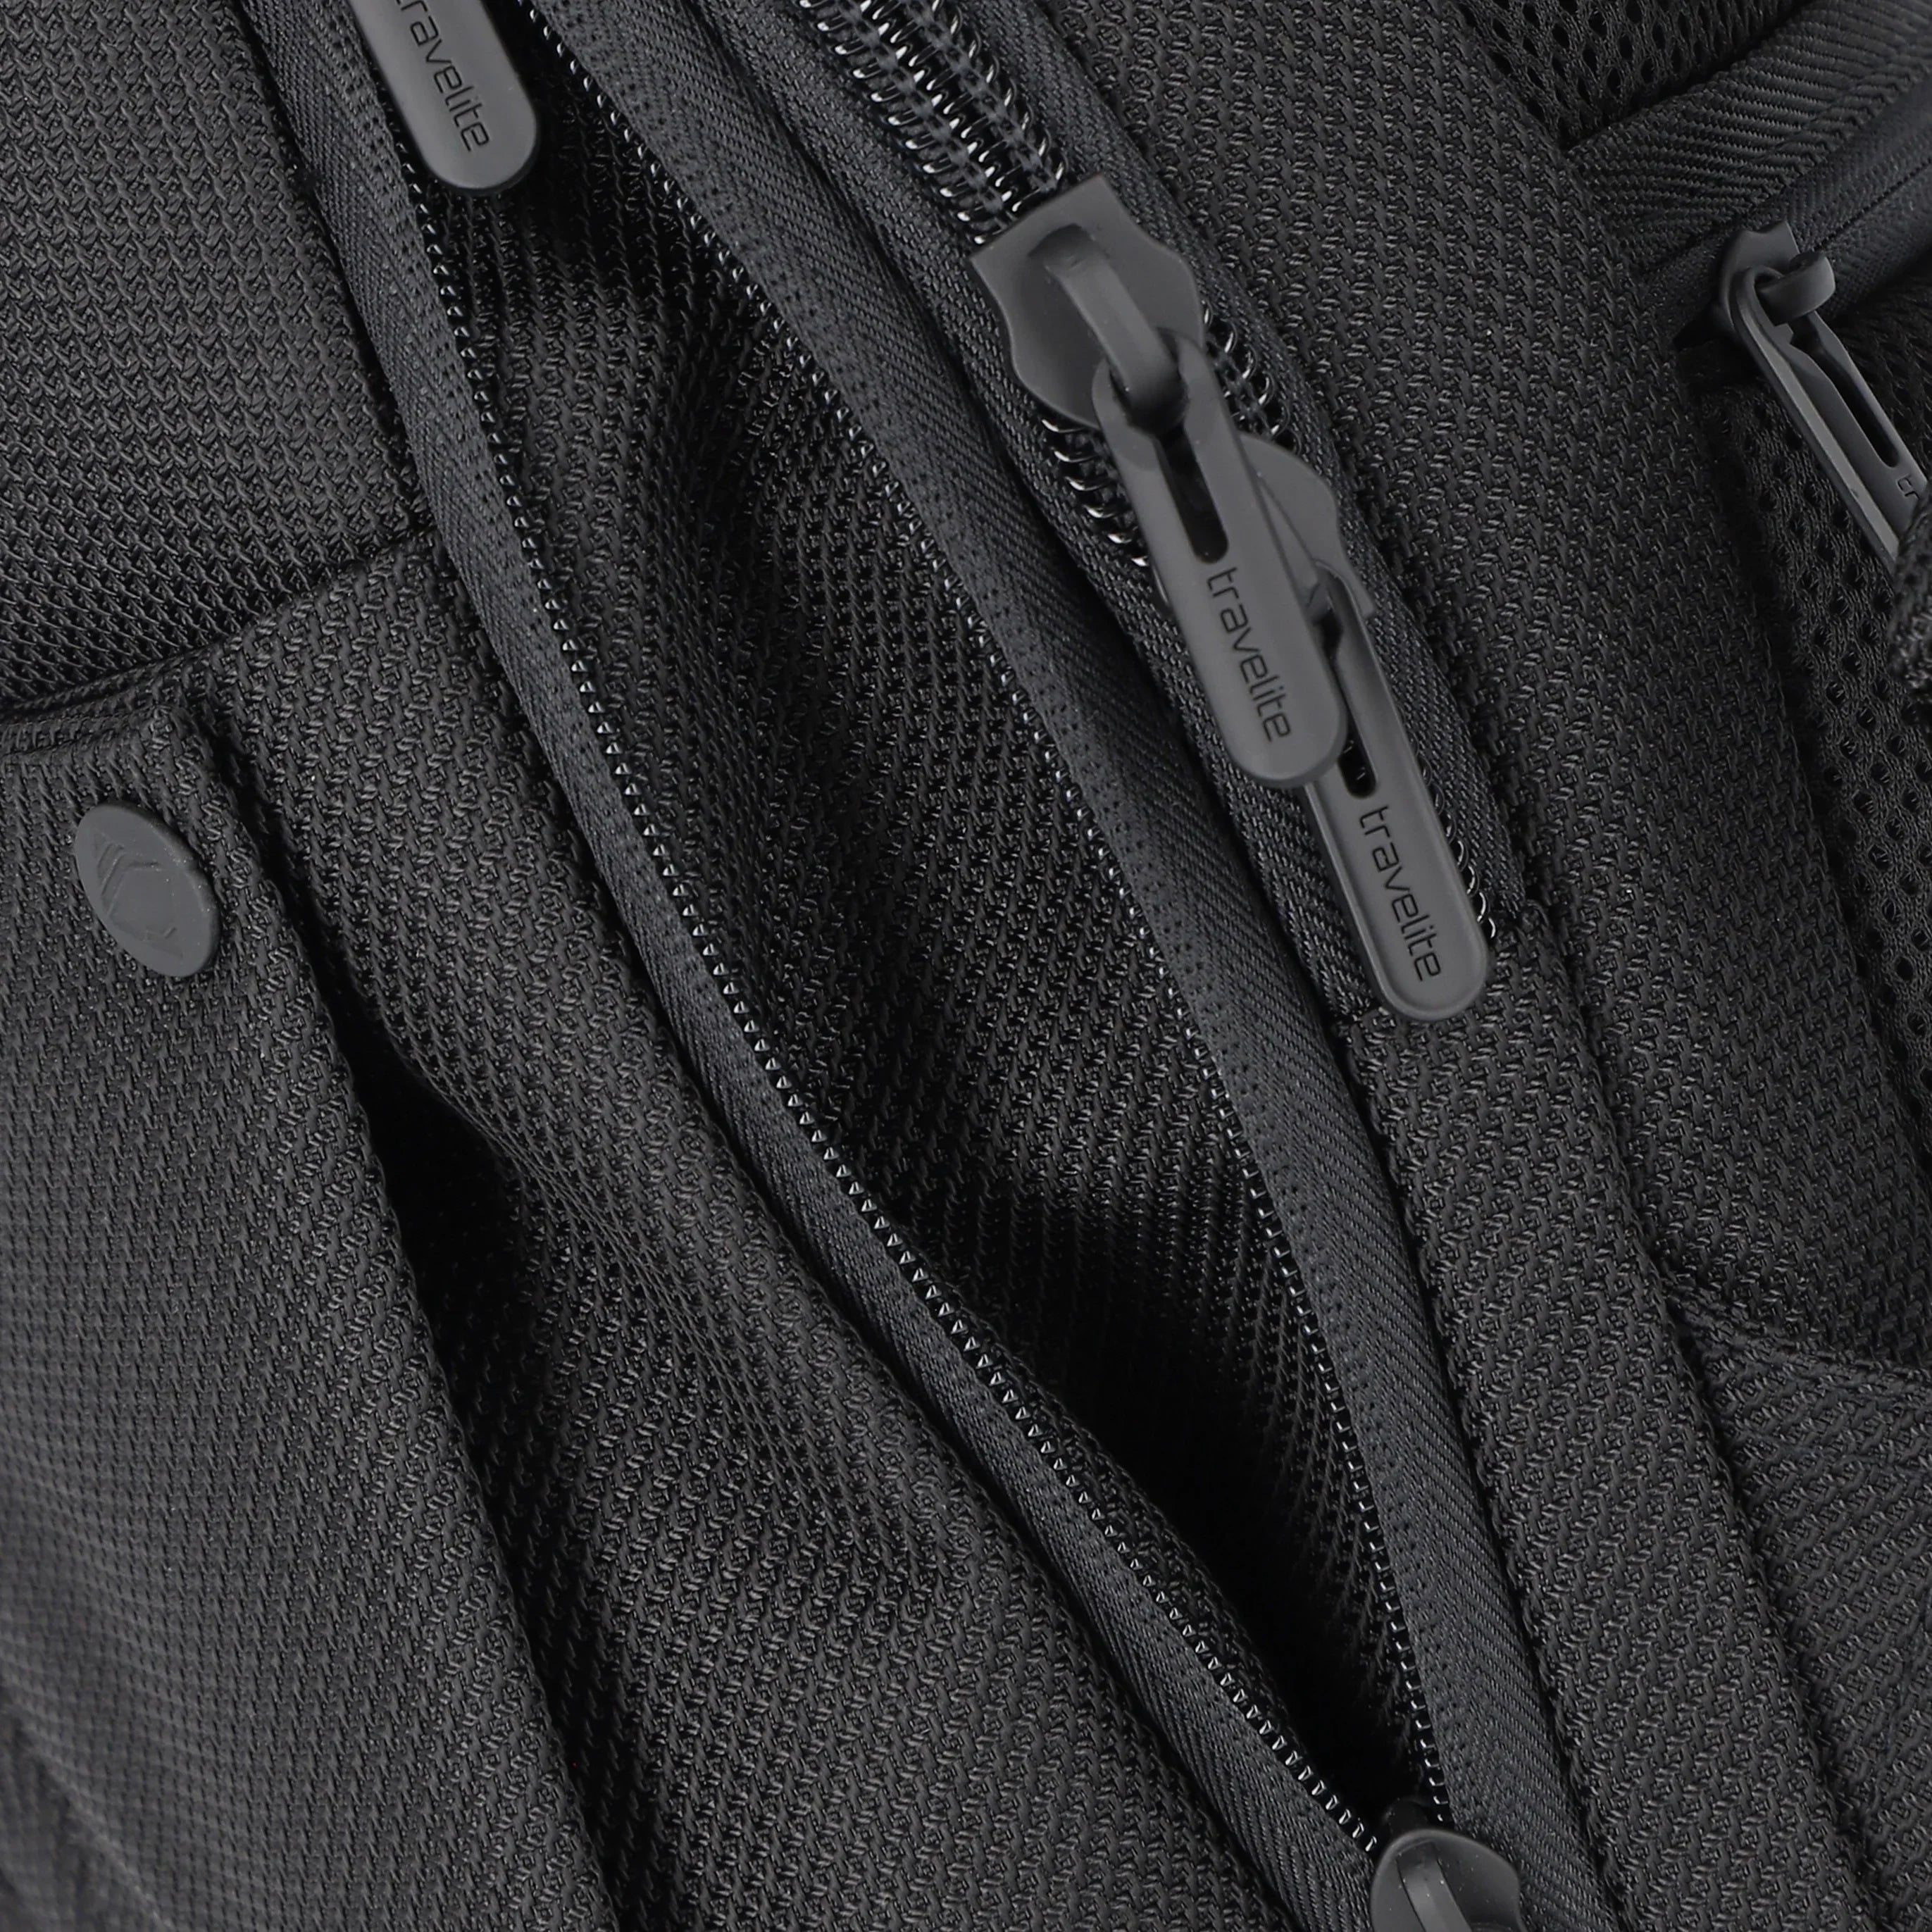 Travelite Meet Laptop Backpack 41 cm - Black